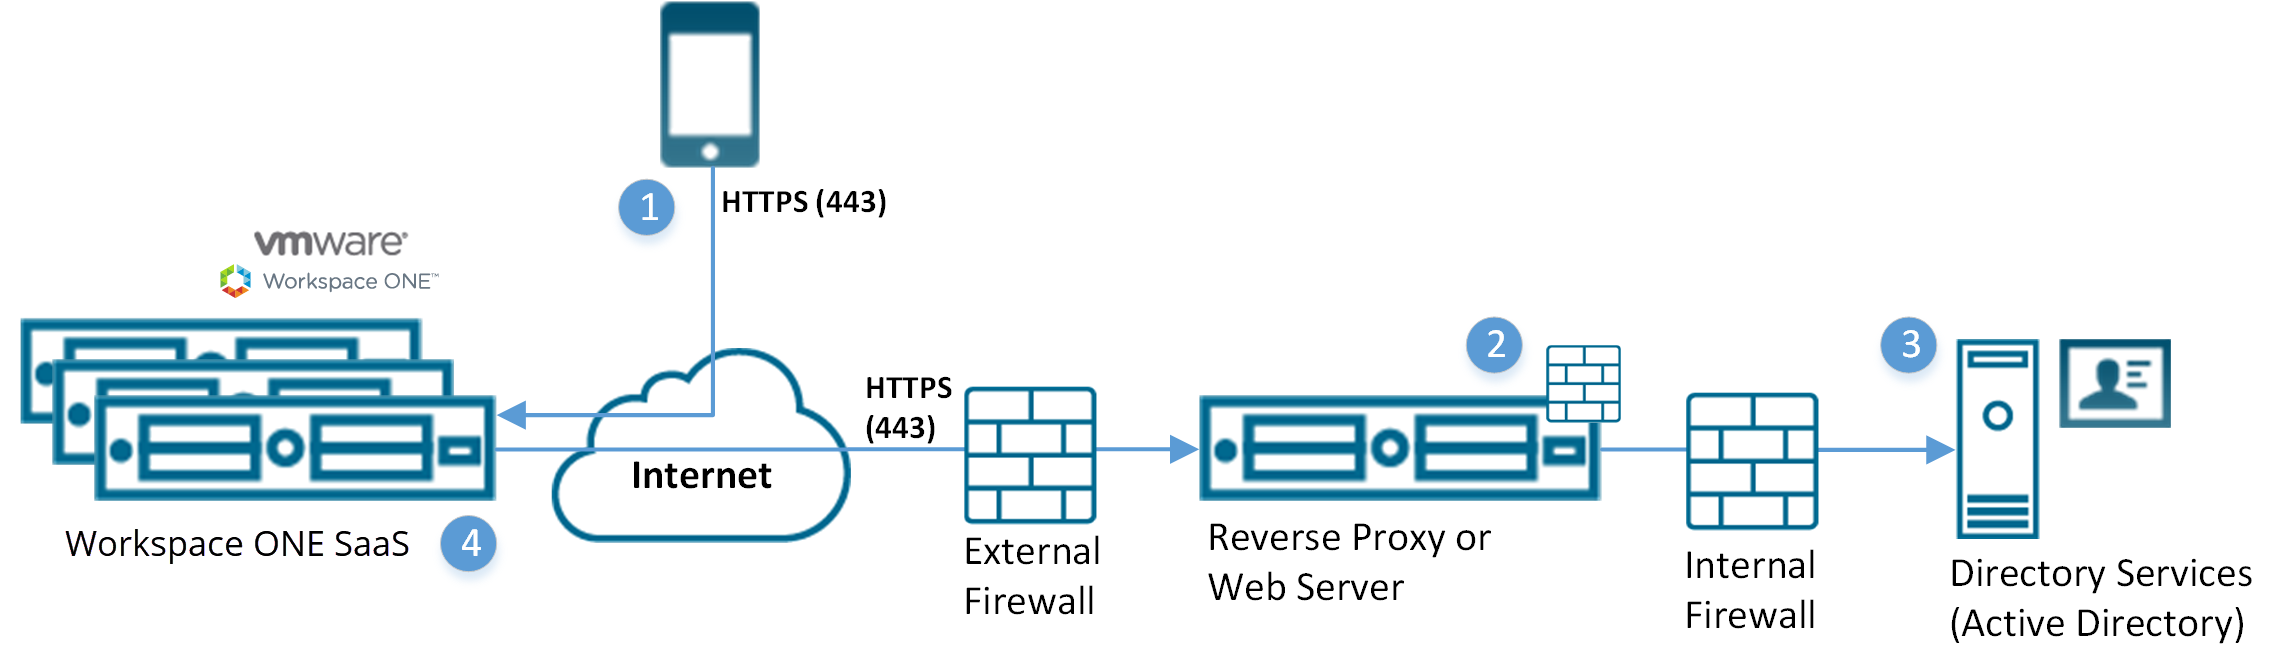 Este diagrama mostra um servidor proxy reverso como o intermediário entre os serviços de diretório e o modelo do Workspace ONE SaaS.